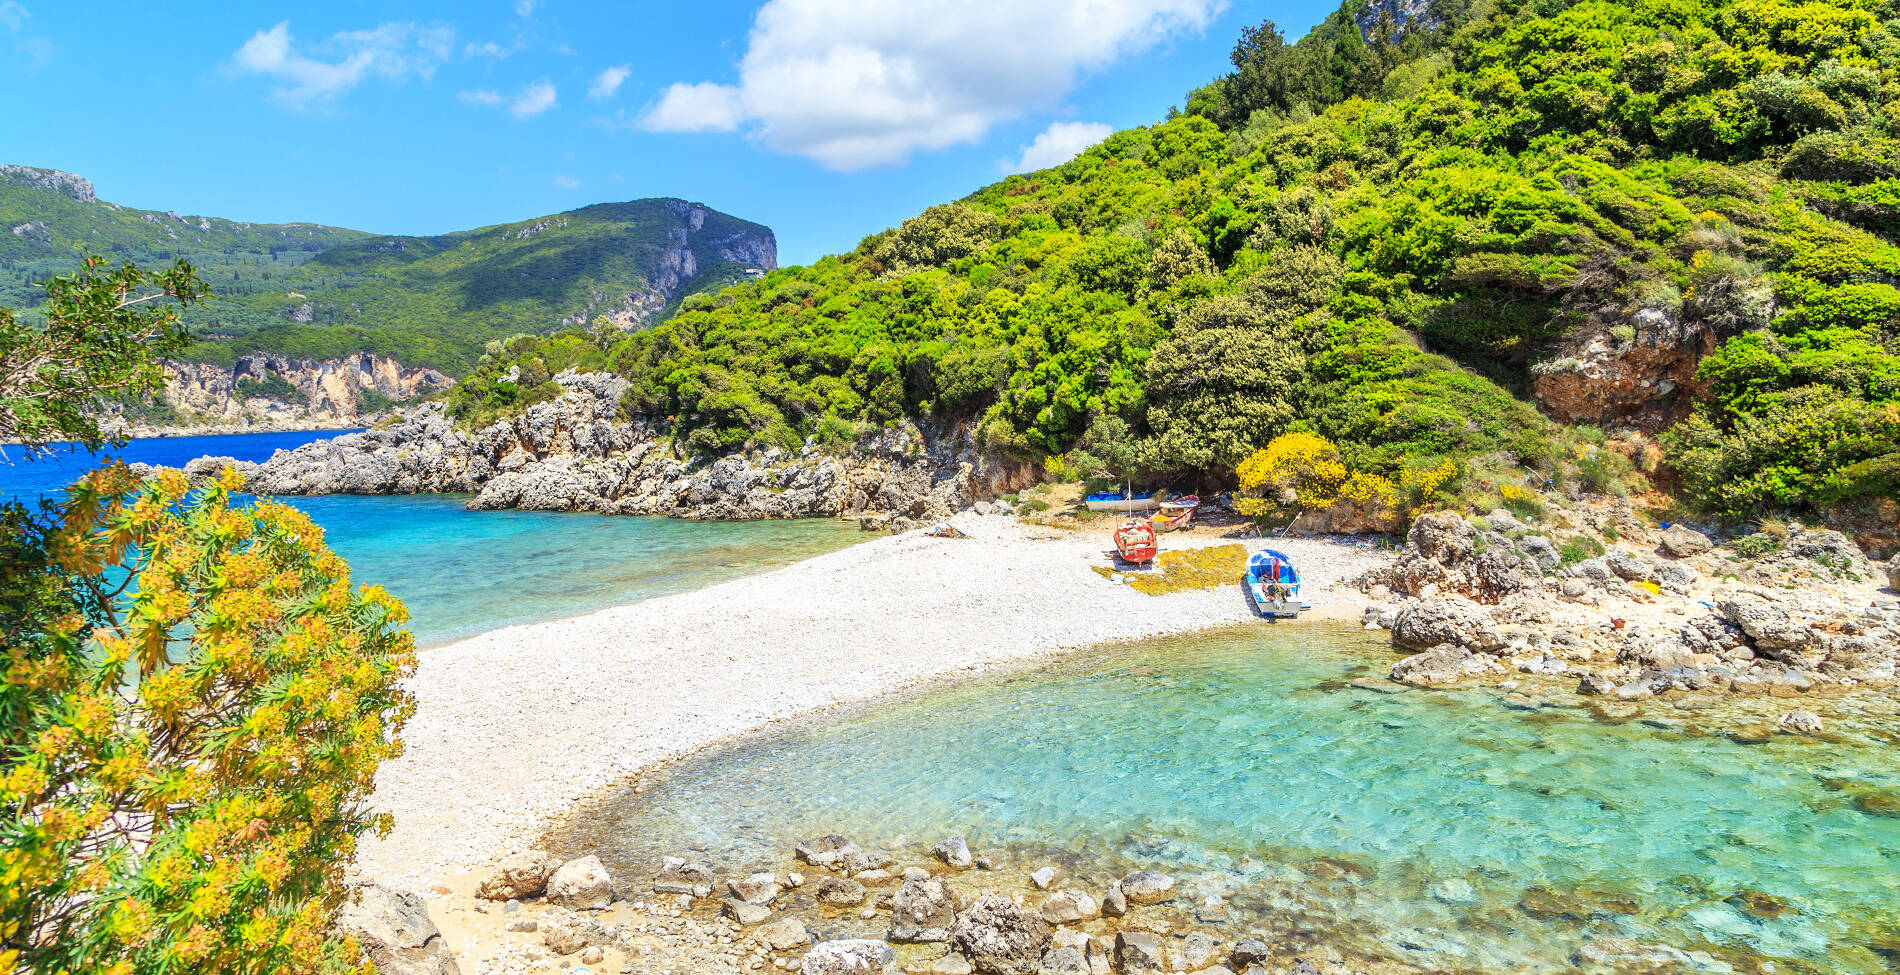 Δίδυμες ελληνικές παραλίες που αποθεώνουν… διπλά την ομορφιά της Ελλάδας